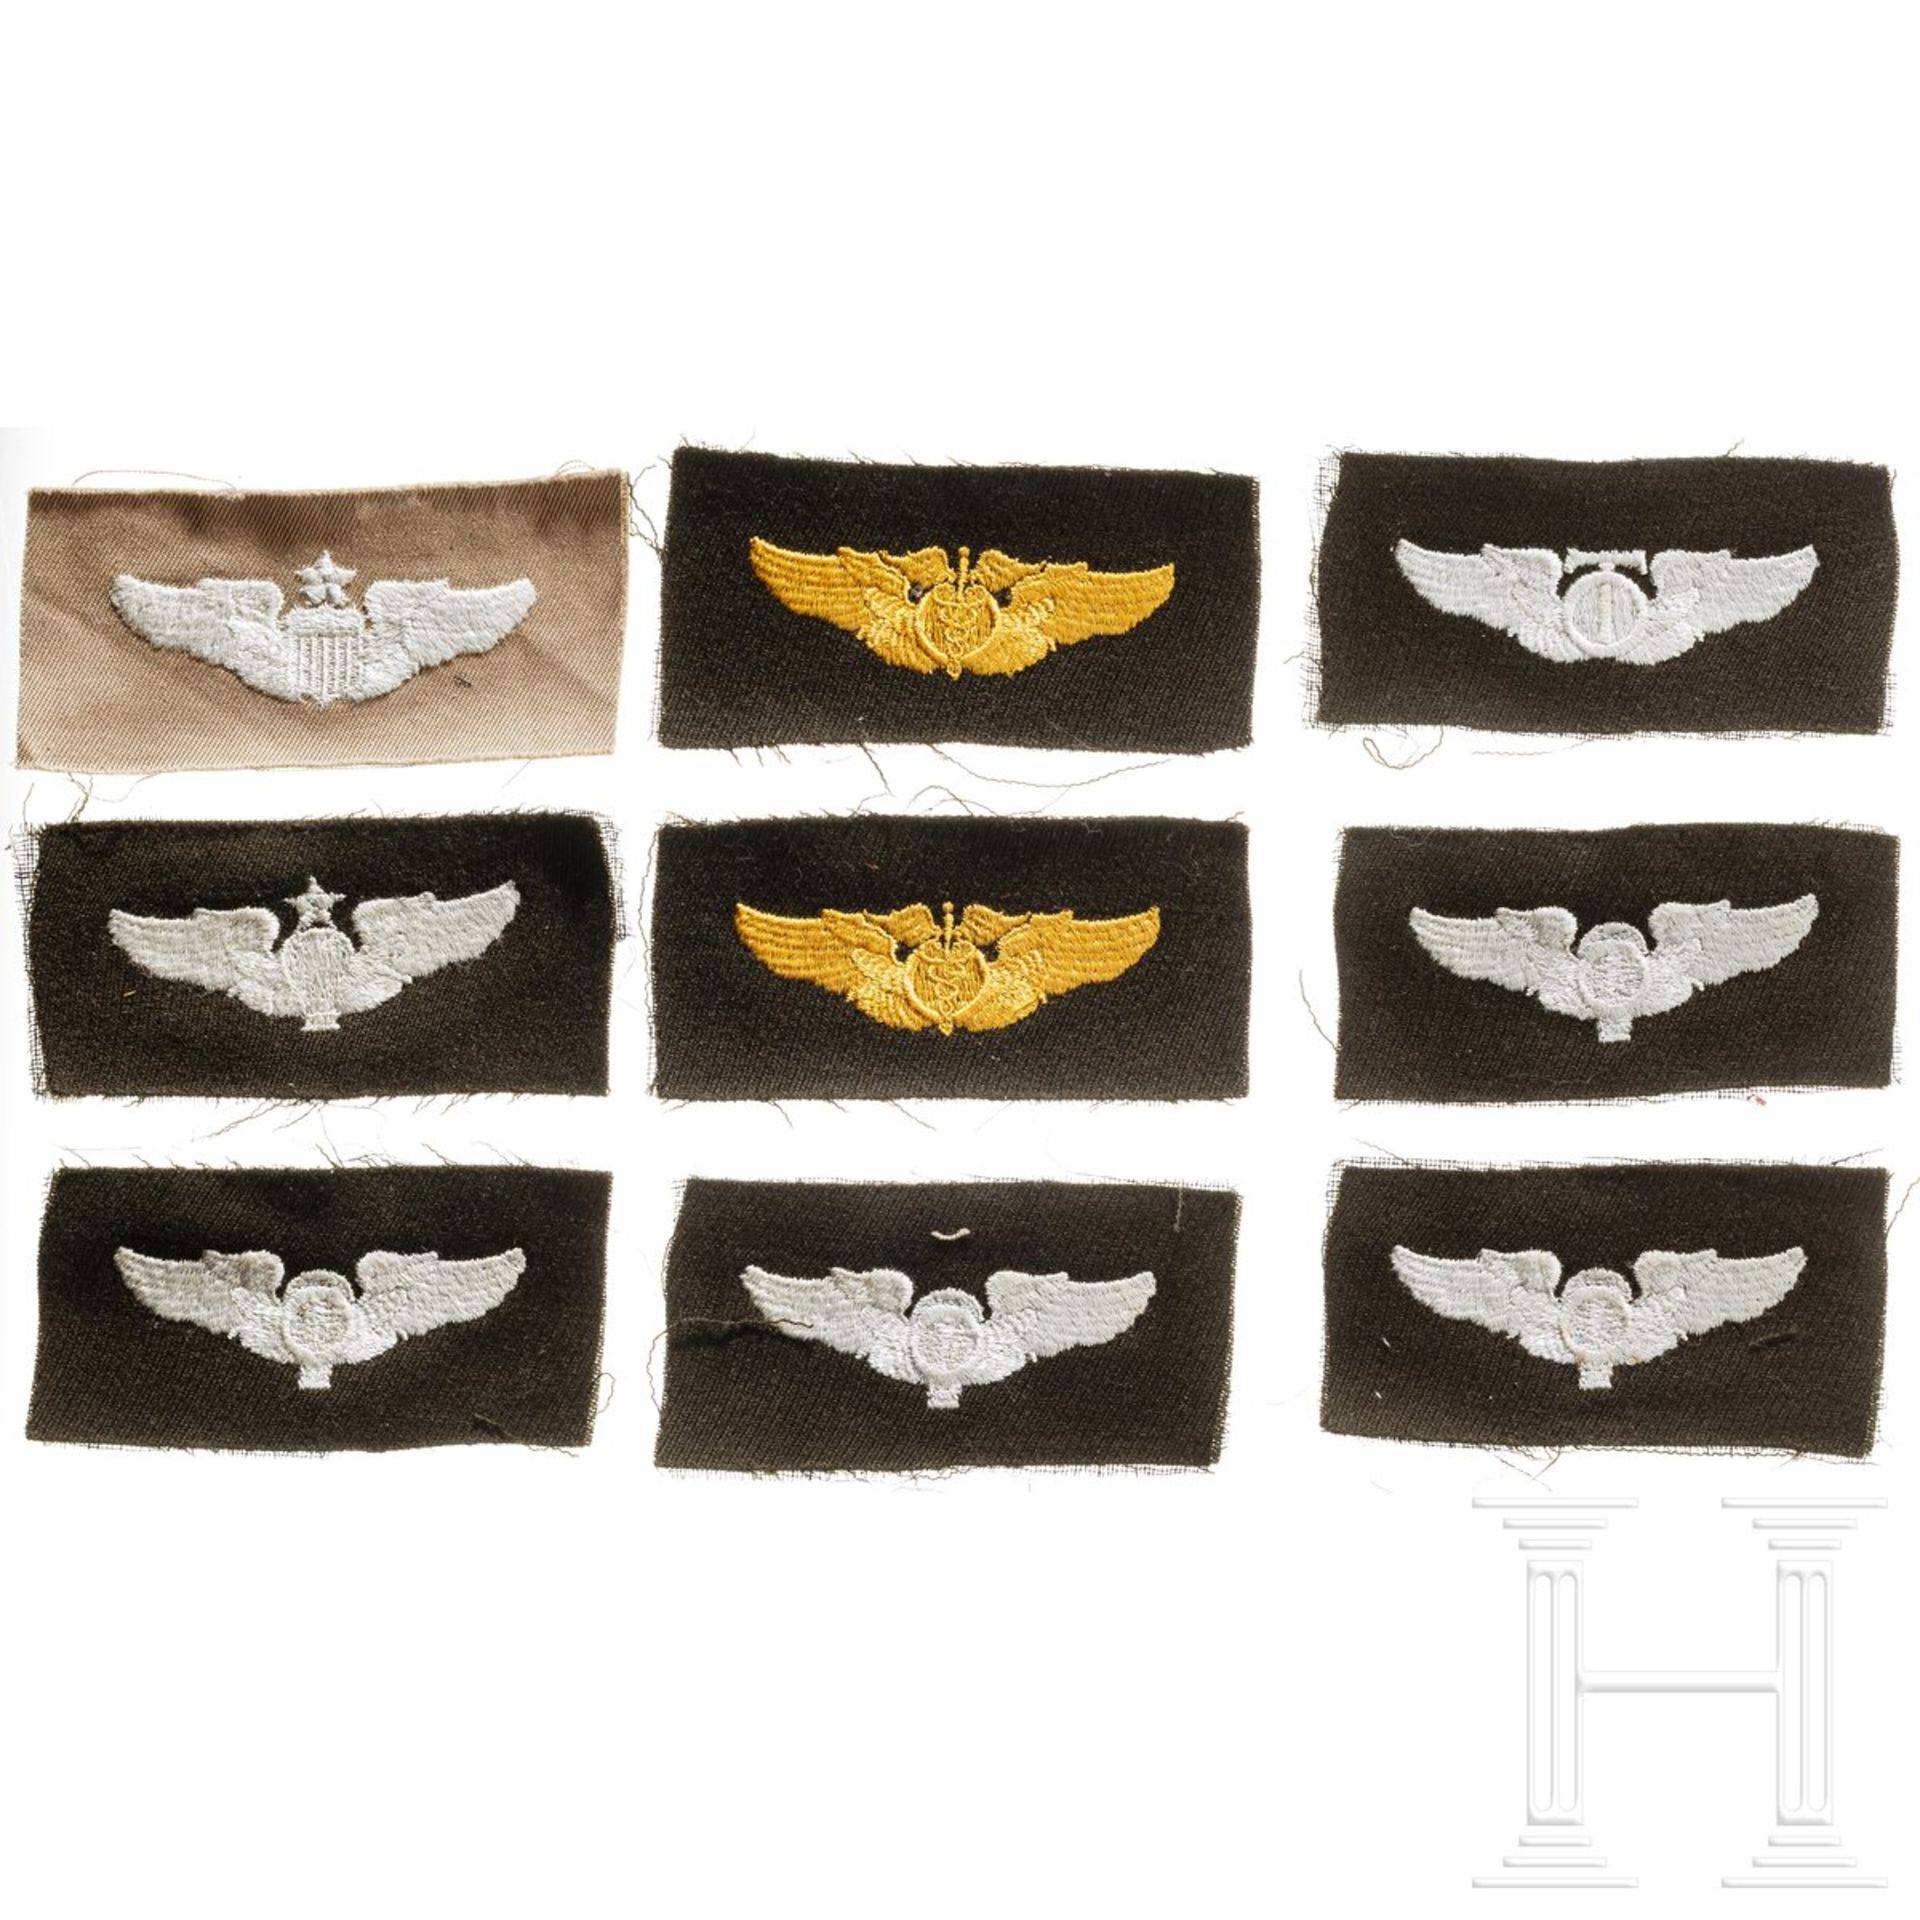 Neun USAF Wings in textiler Ausführung, 2. Weltkrieg